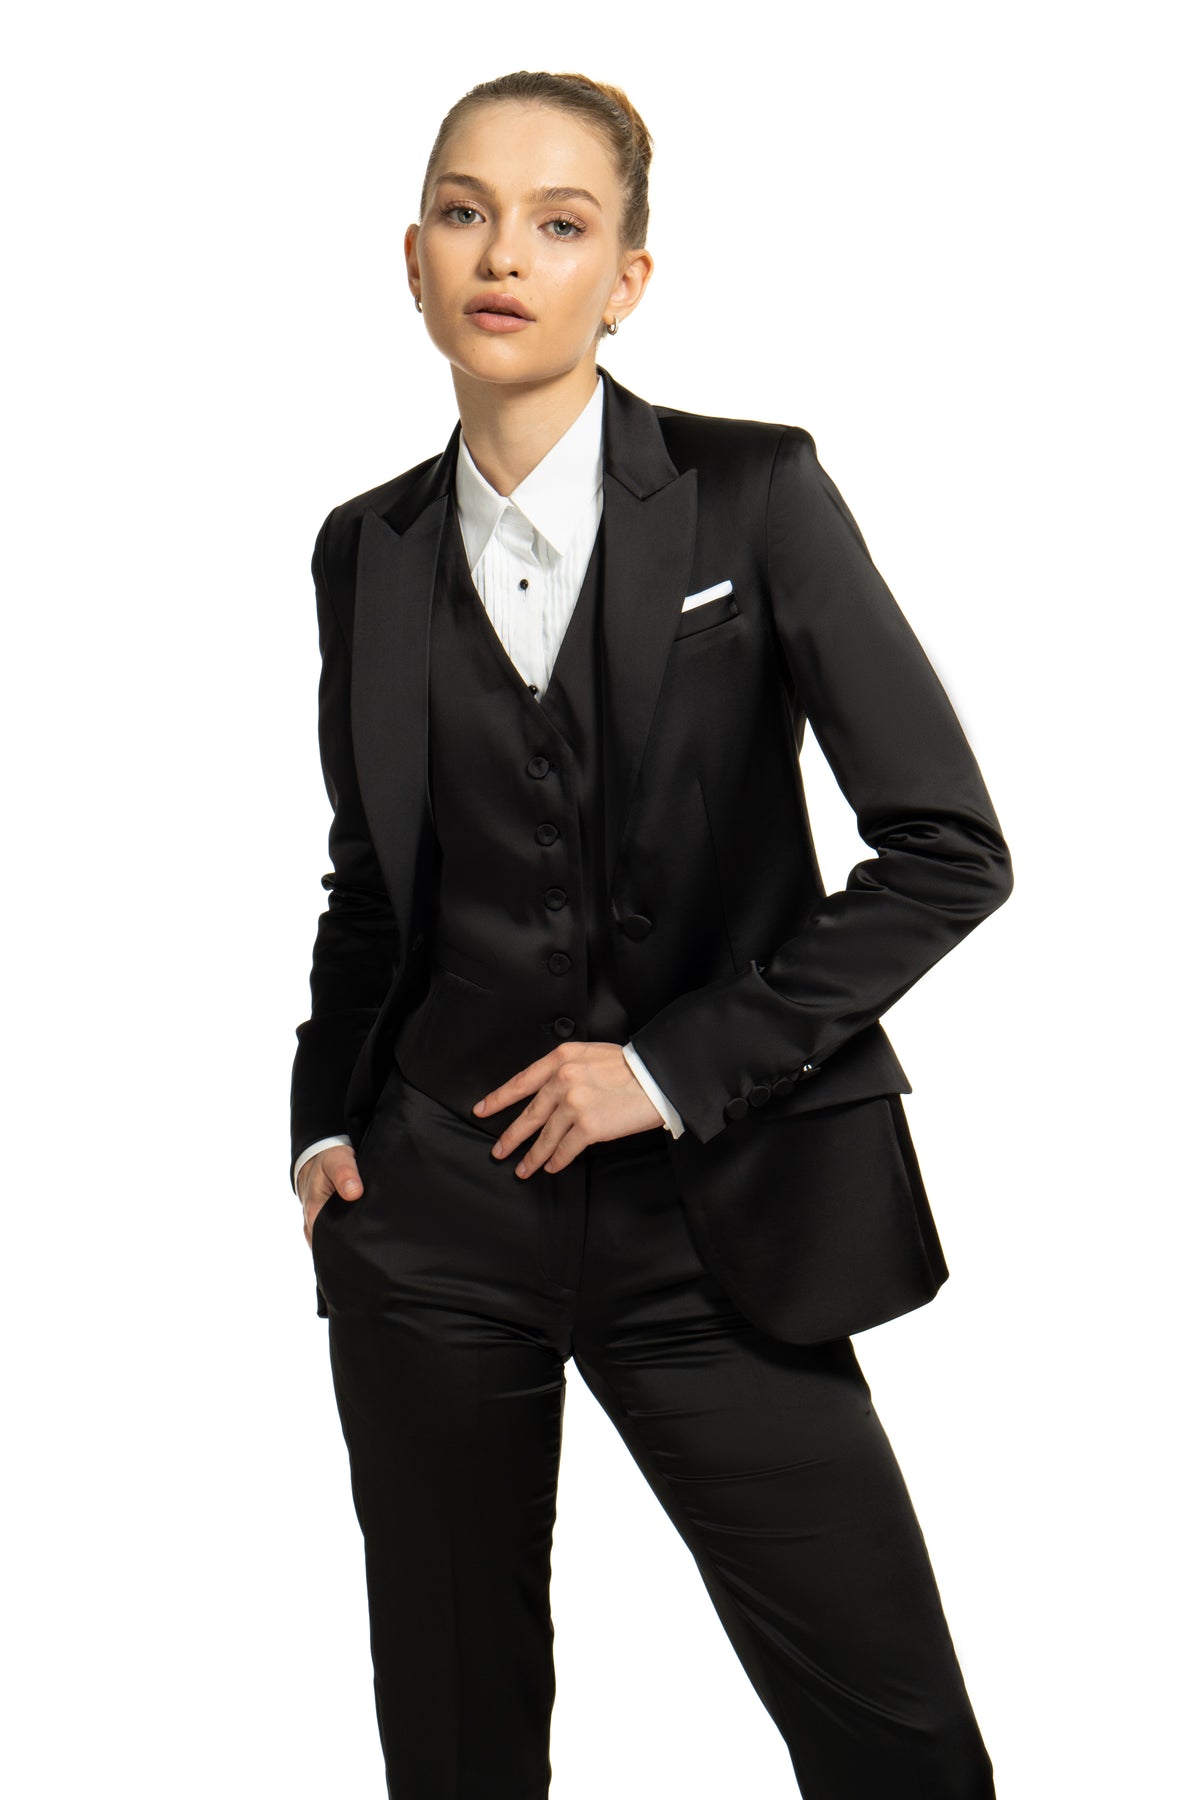 Women’s Tuxedo Suits Black & White | Little Black Tux – LITTLE BLACK TUX